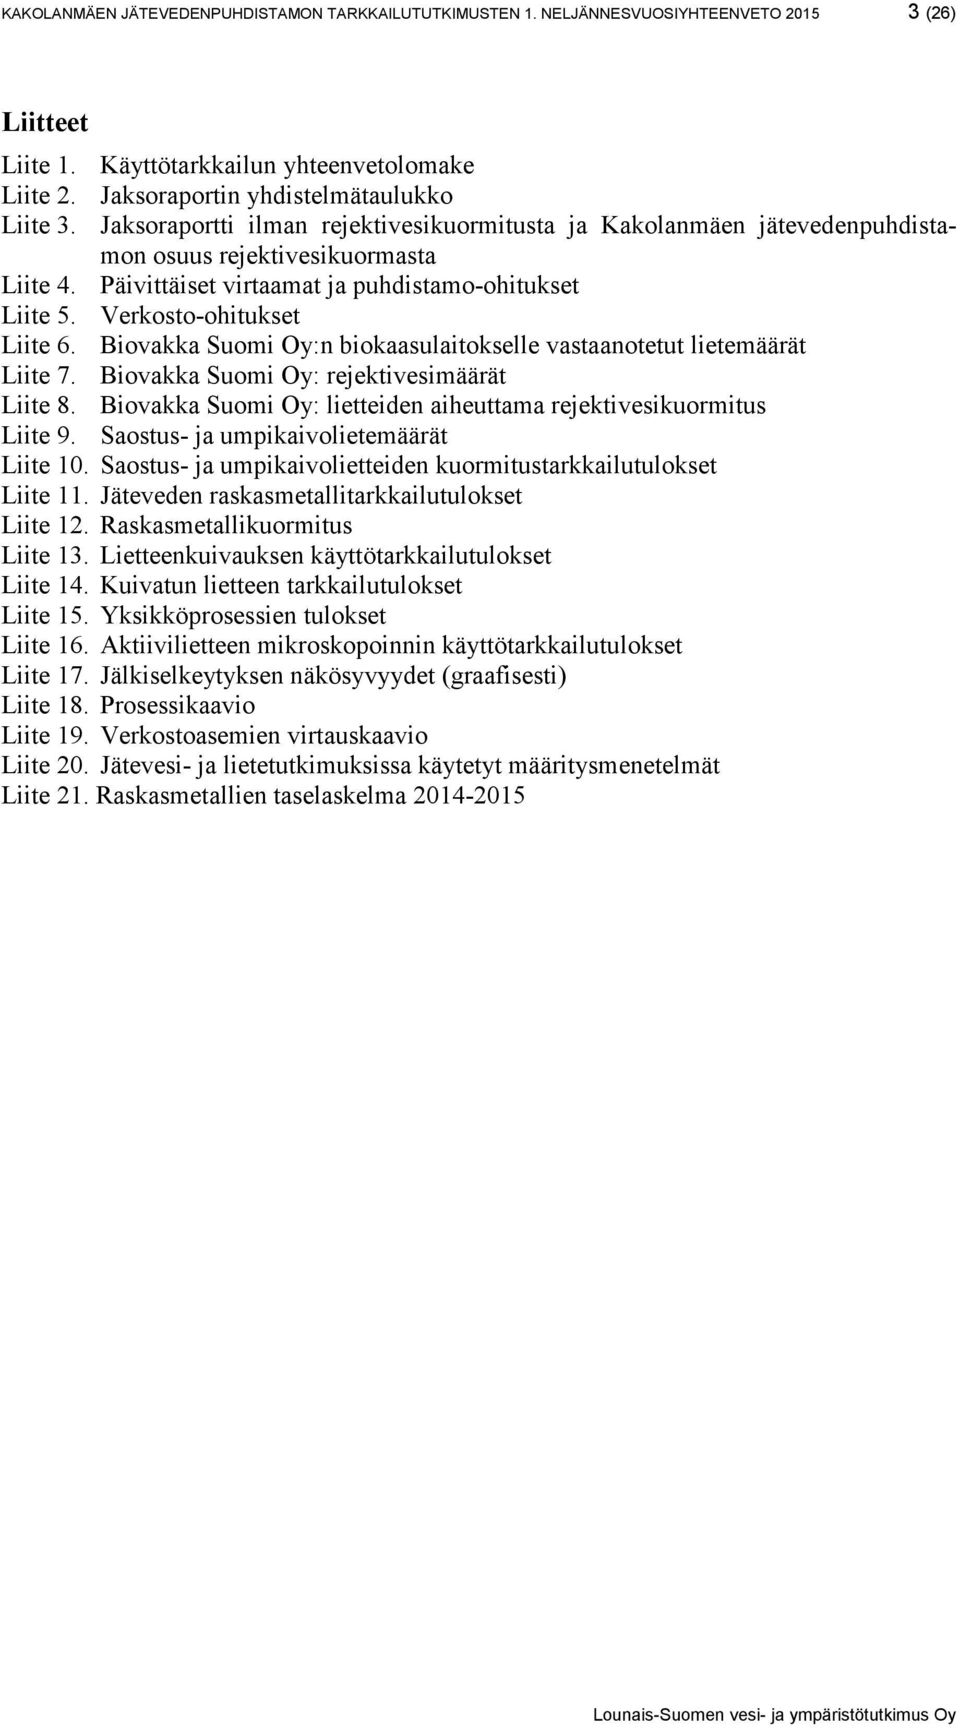 Biovakka Suomi Oy:n biokaasulaitokselle vastaanotetut lietemäärät Liite 7. Biovakka Suomi Oy: rejektivesimäärät Liite 8. Biovakka Suomi Oy: lietteiden aiheuttama rejektivesikuormitus Liite 9.